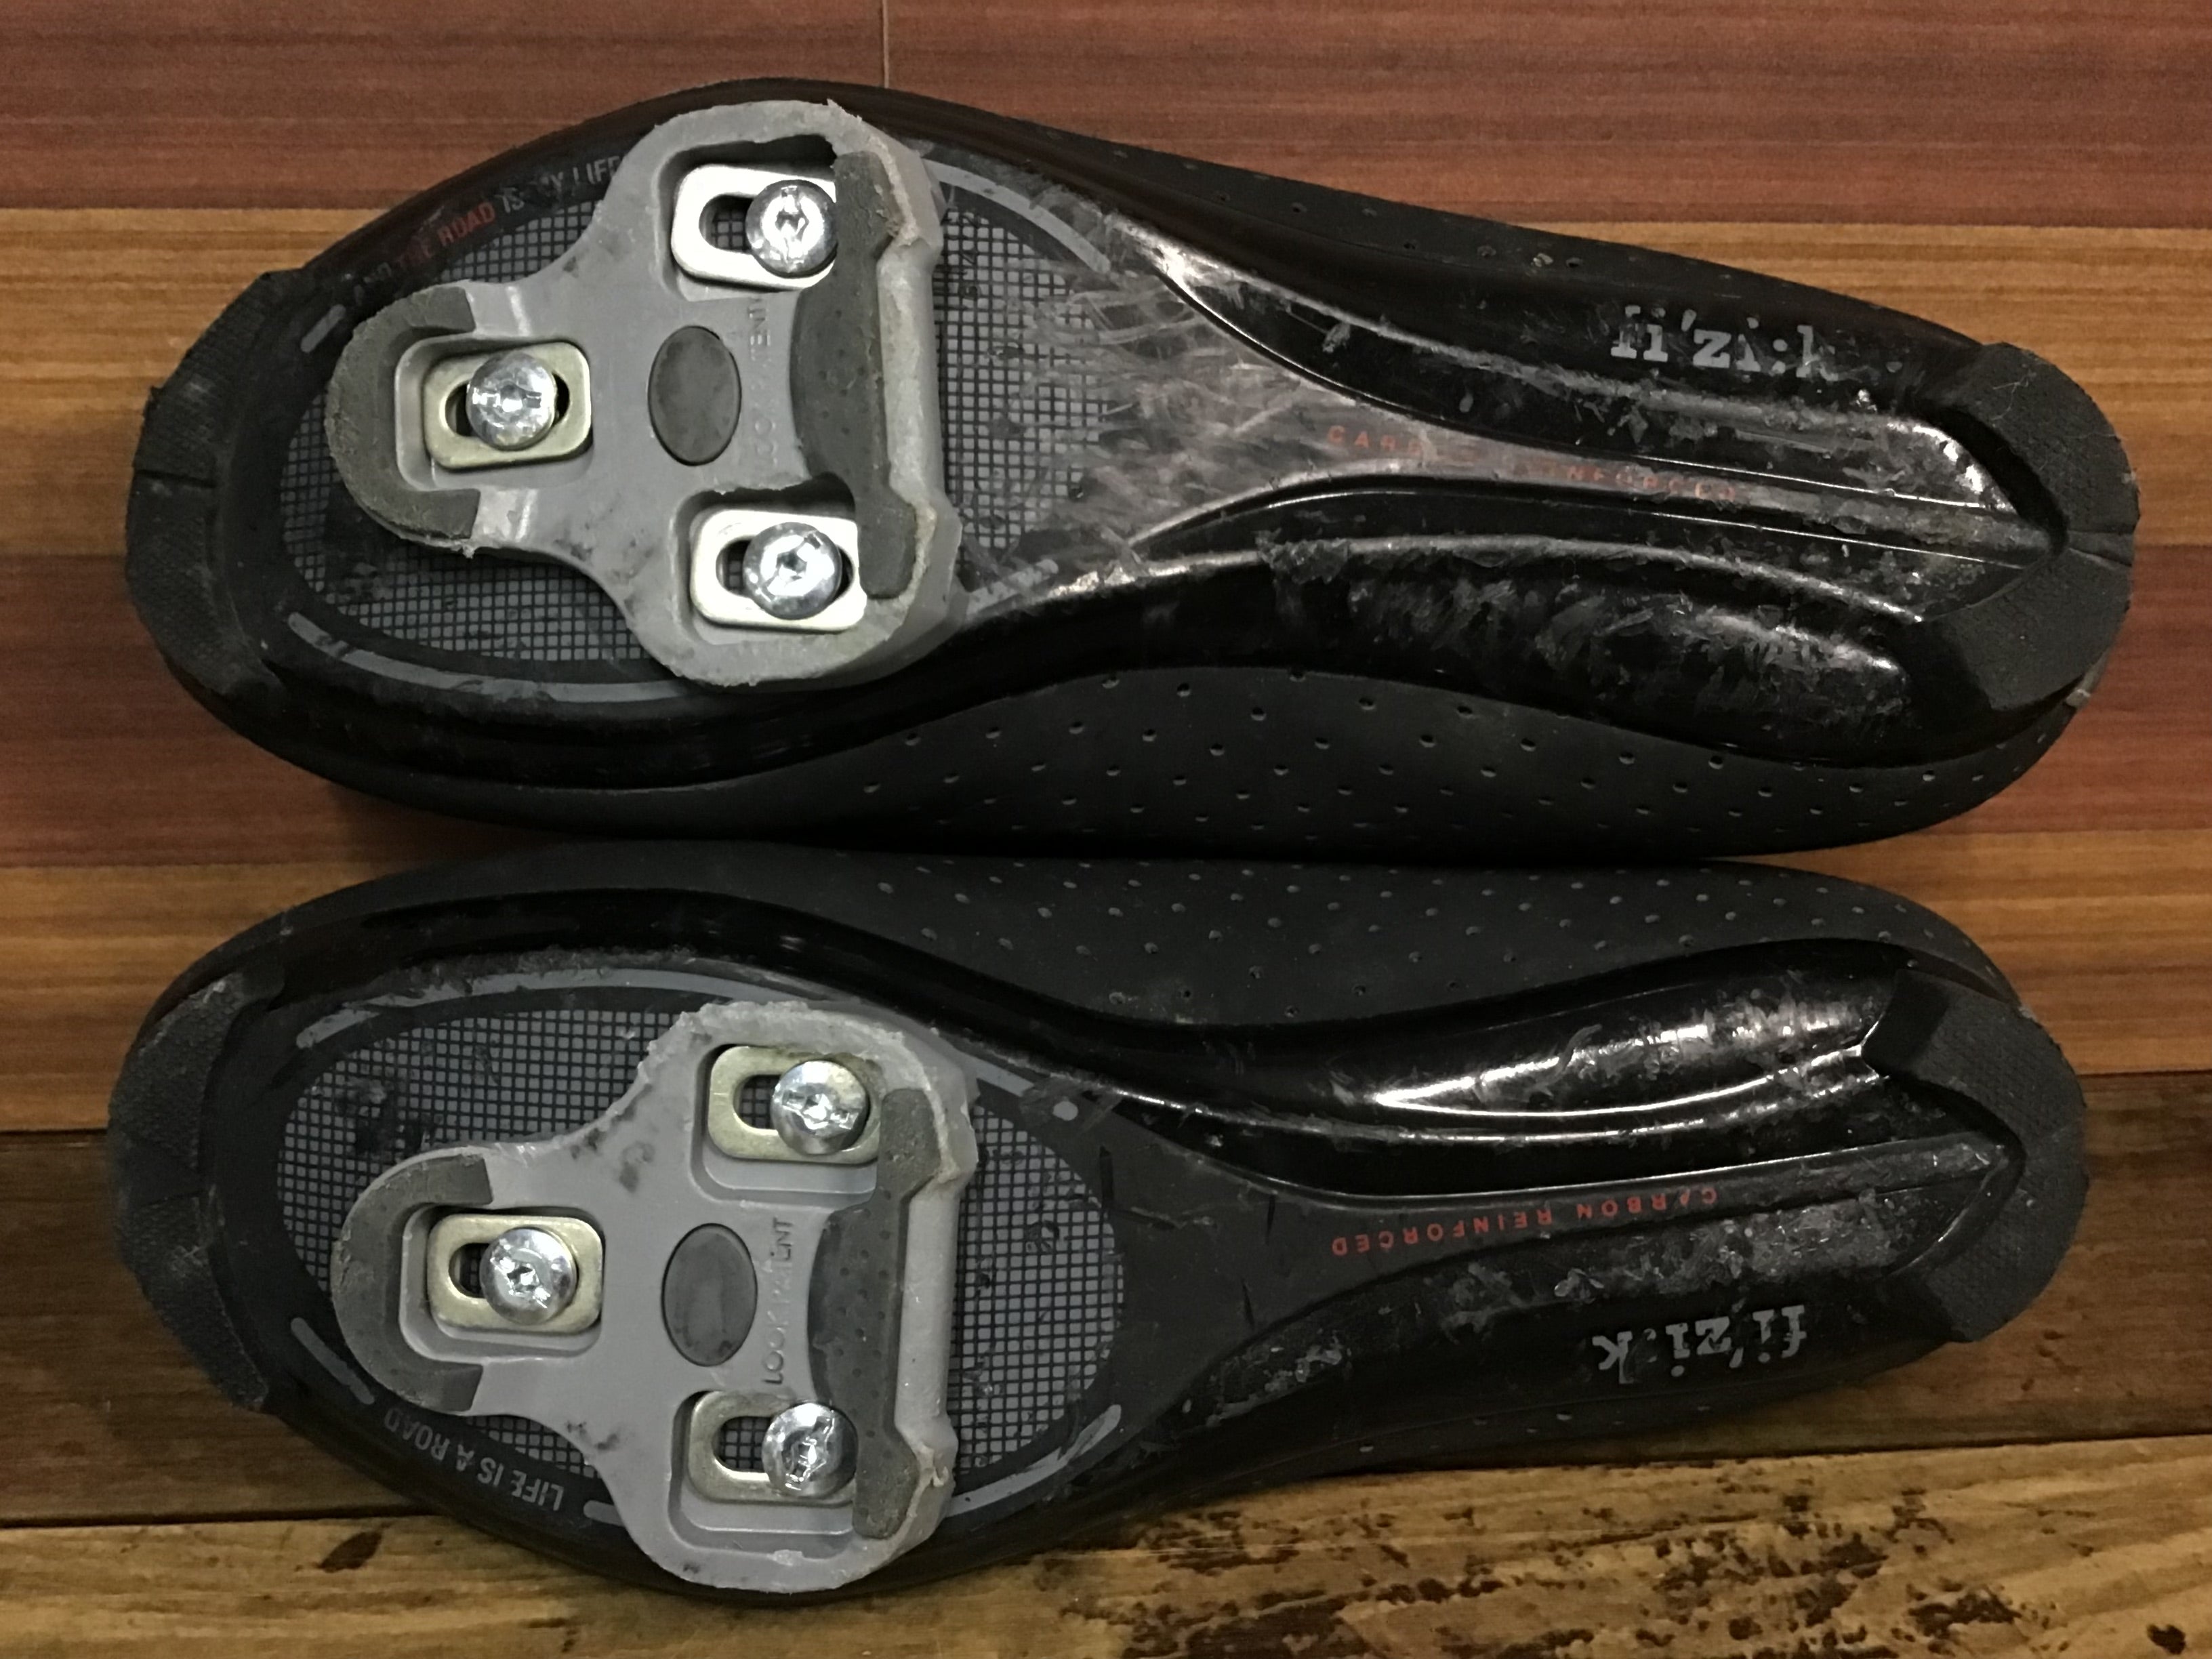 HG333 フィジーク fizik R5 Rord Shoes ビンディングシューズ SPD-SL 黒 EU39.5 ※ソールガリ傷